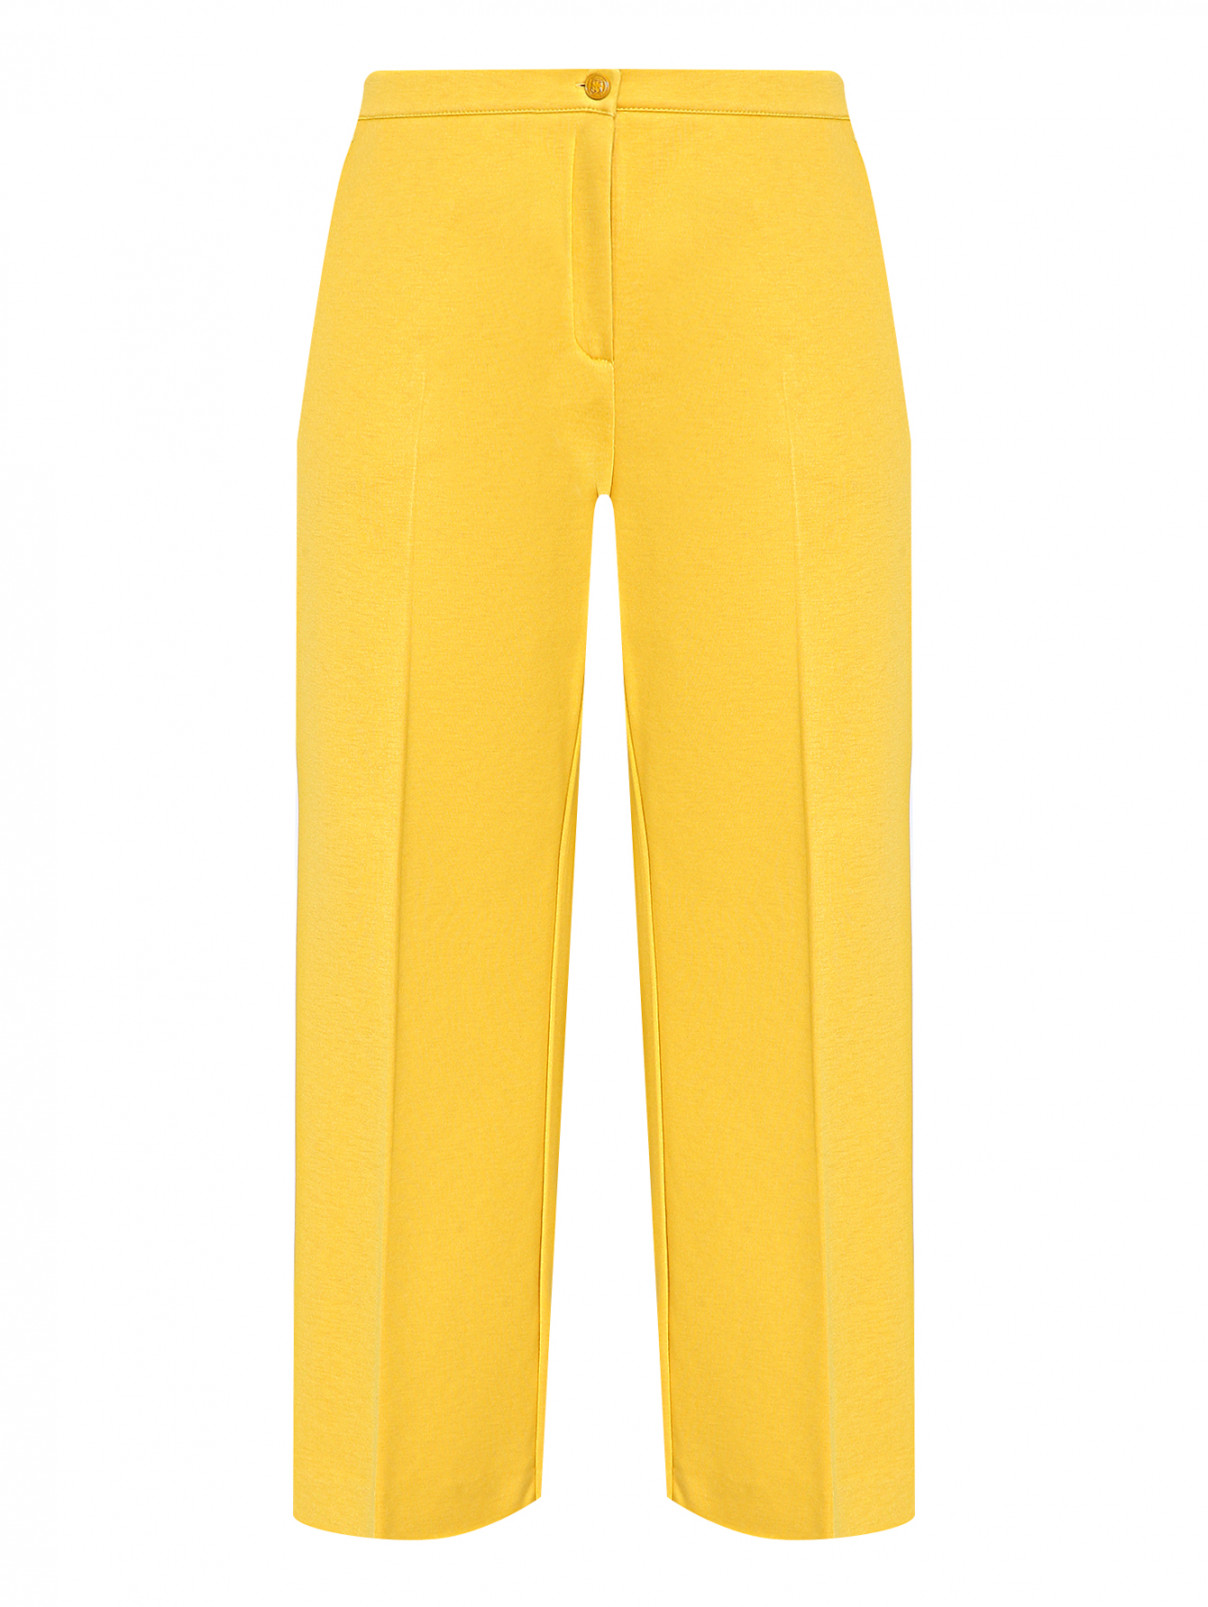 Трикотажные брюки с карманами Marina Rinaldi  –  Общий вид  – Цвет:  Желтый